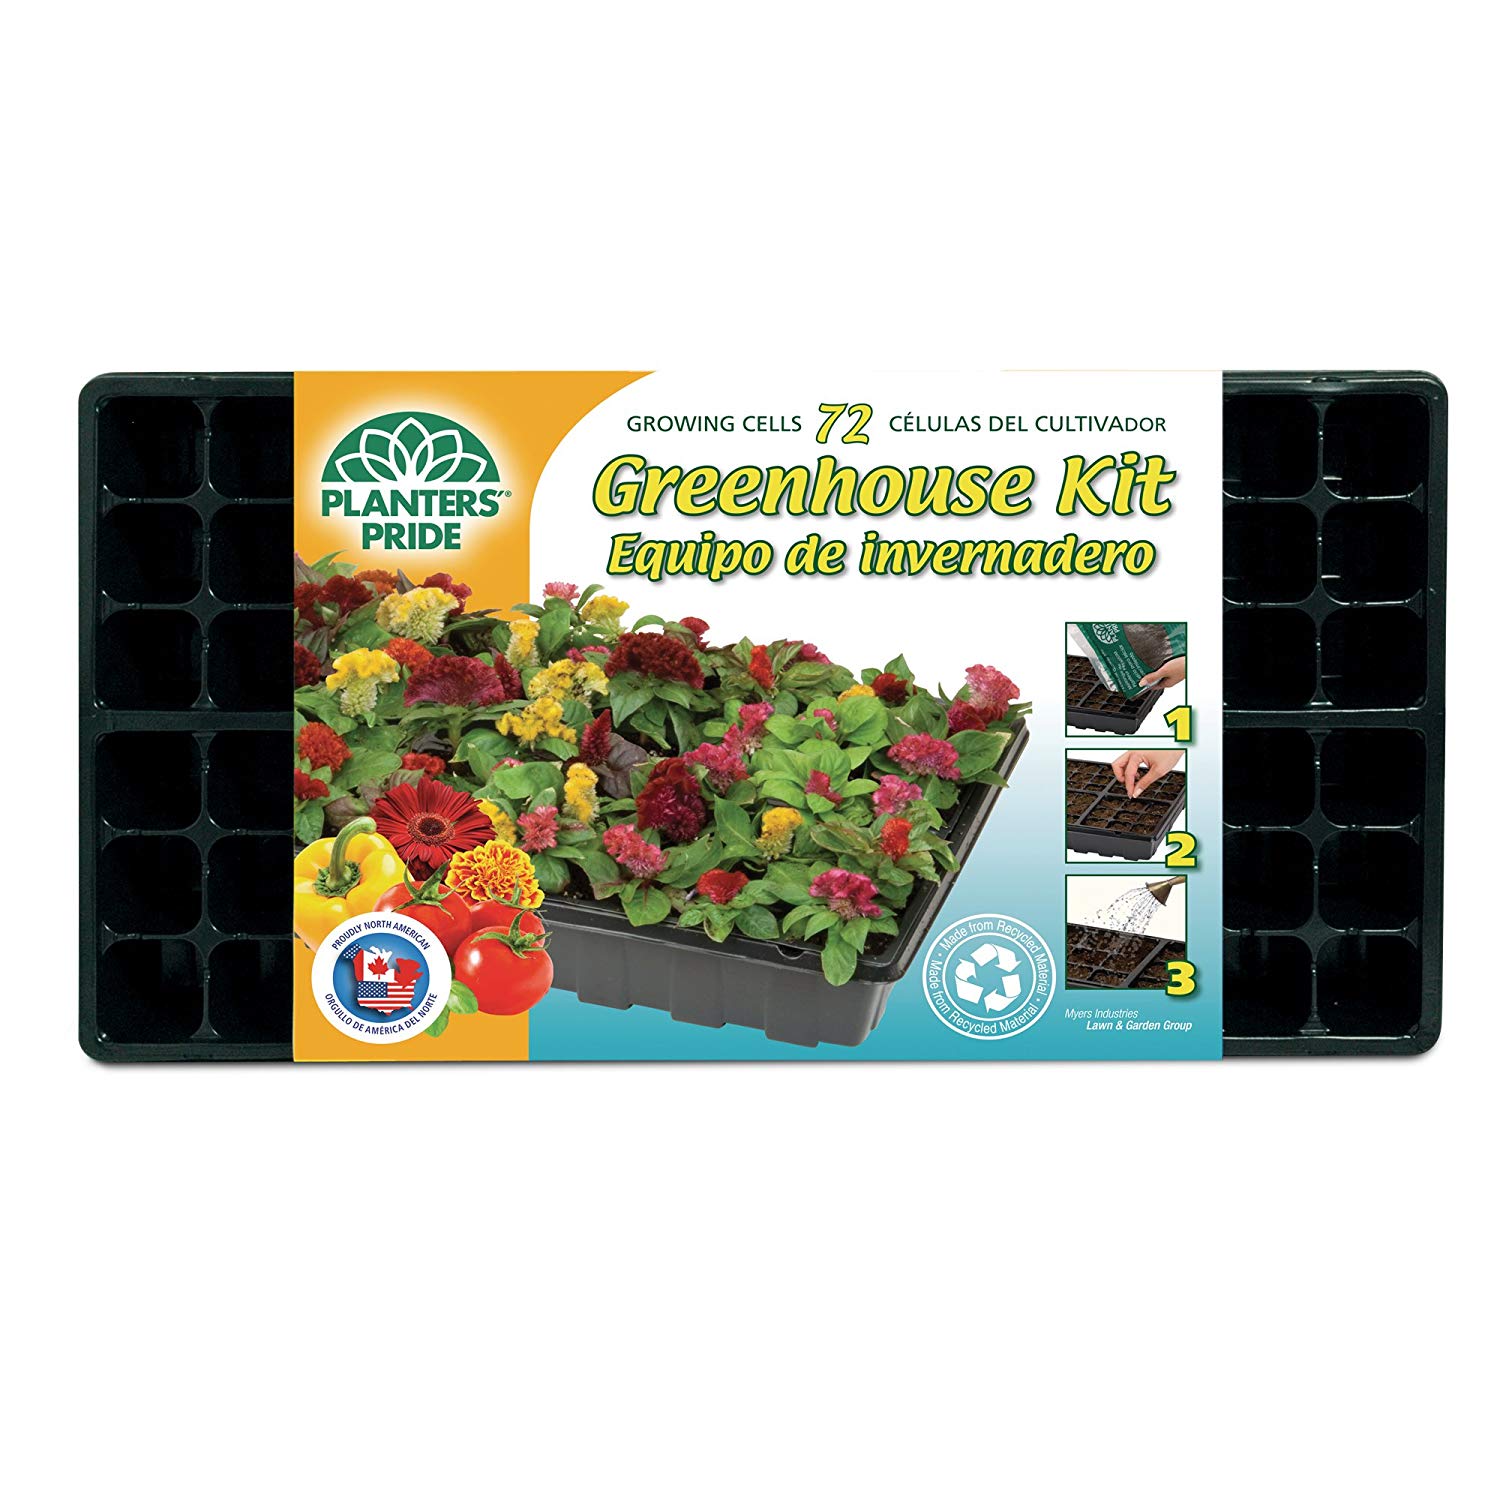 Greenhouse Starter Kit, 72 Growing Cells